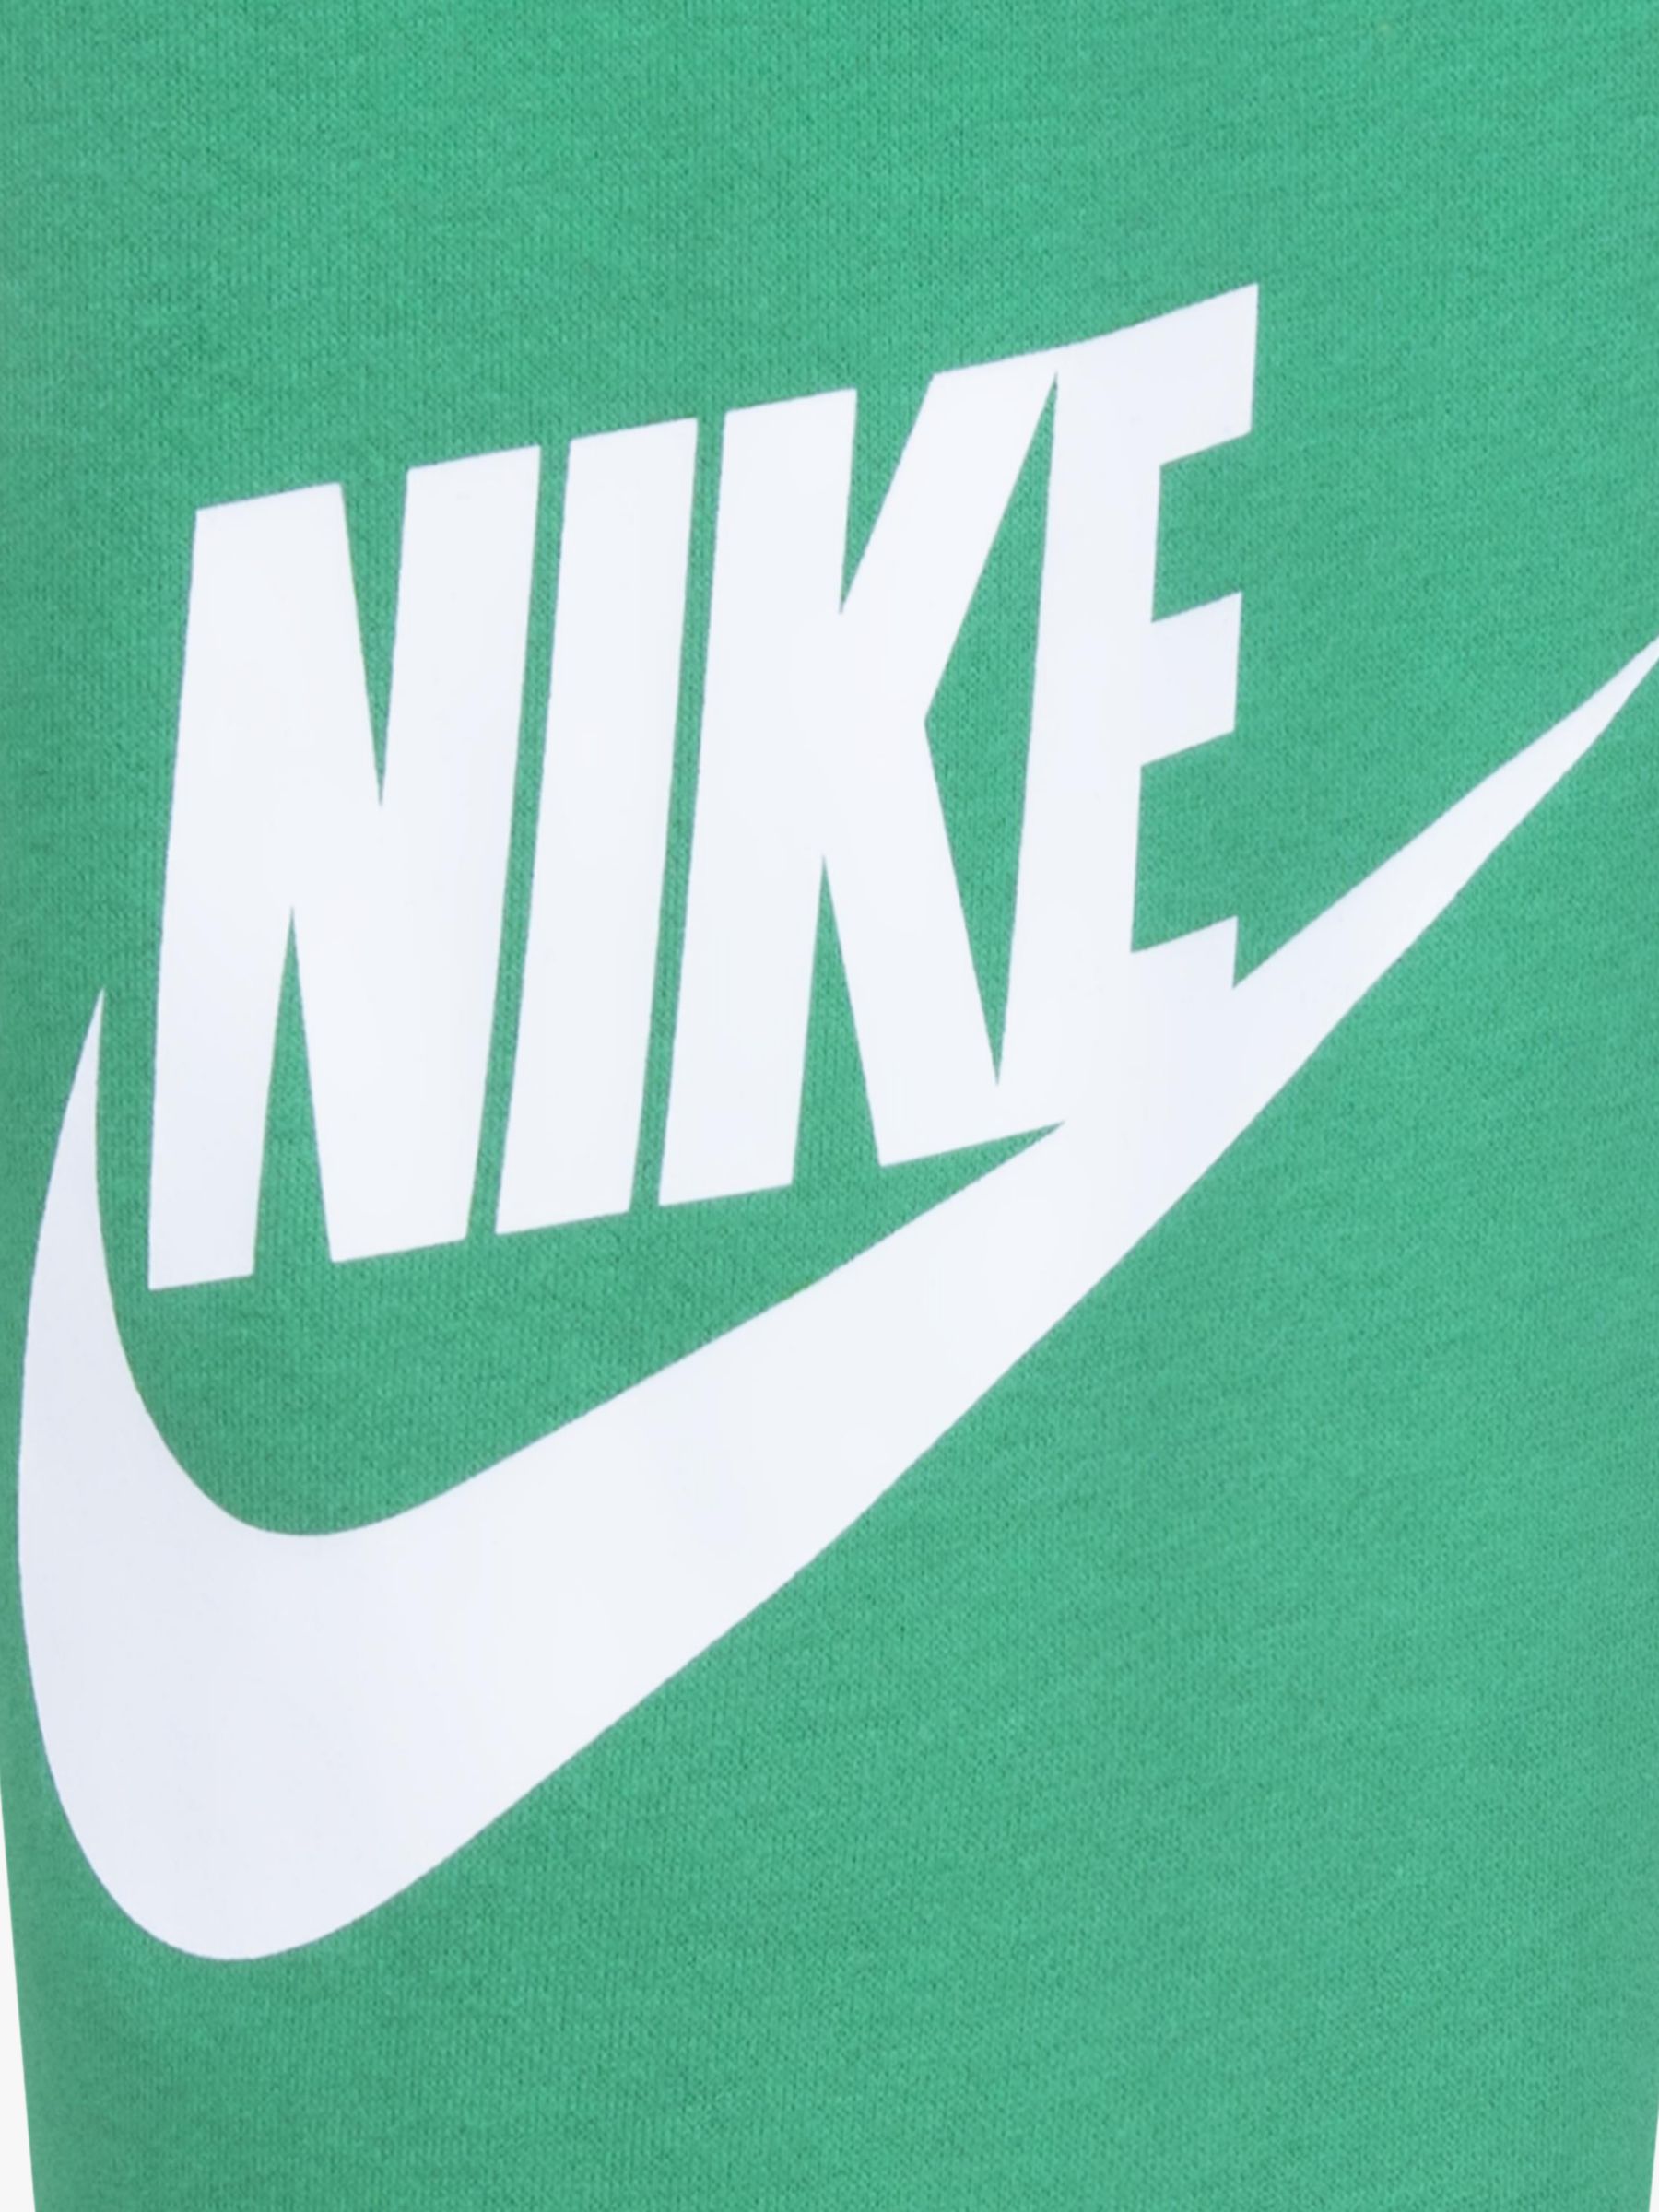 Buy Nike Pale Green Little Kids Club Fleece Tracksuit Set from